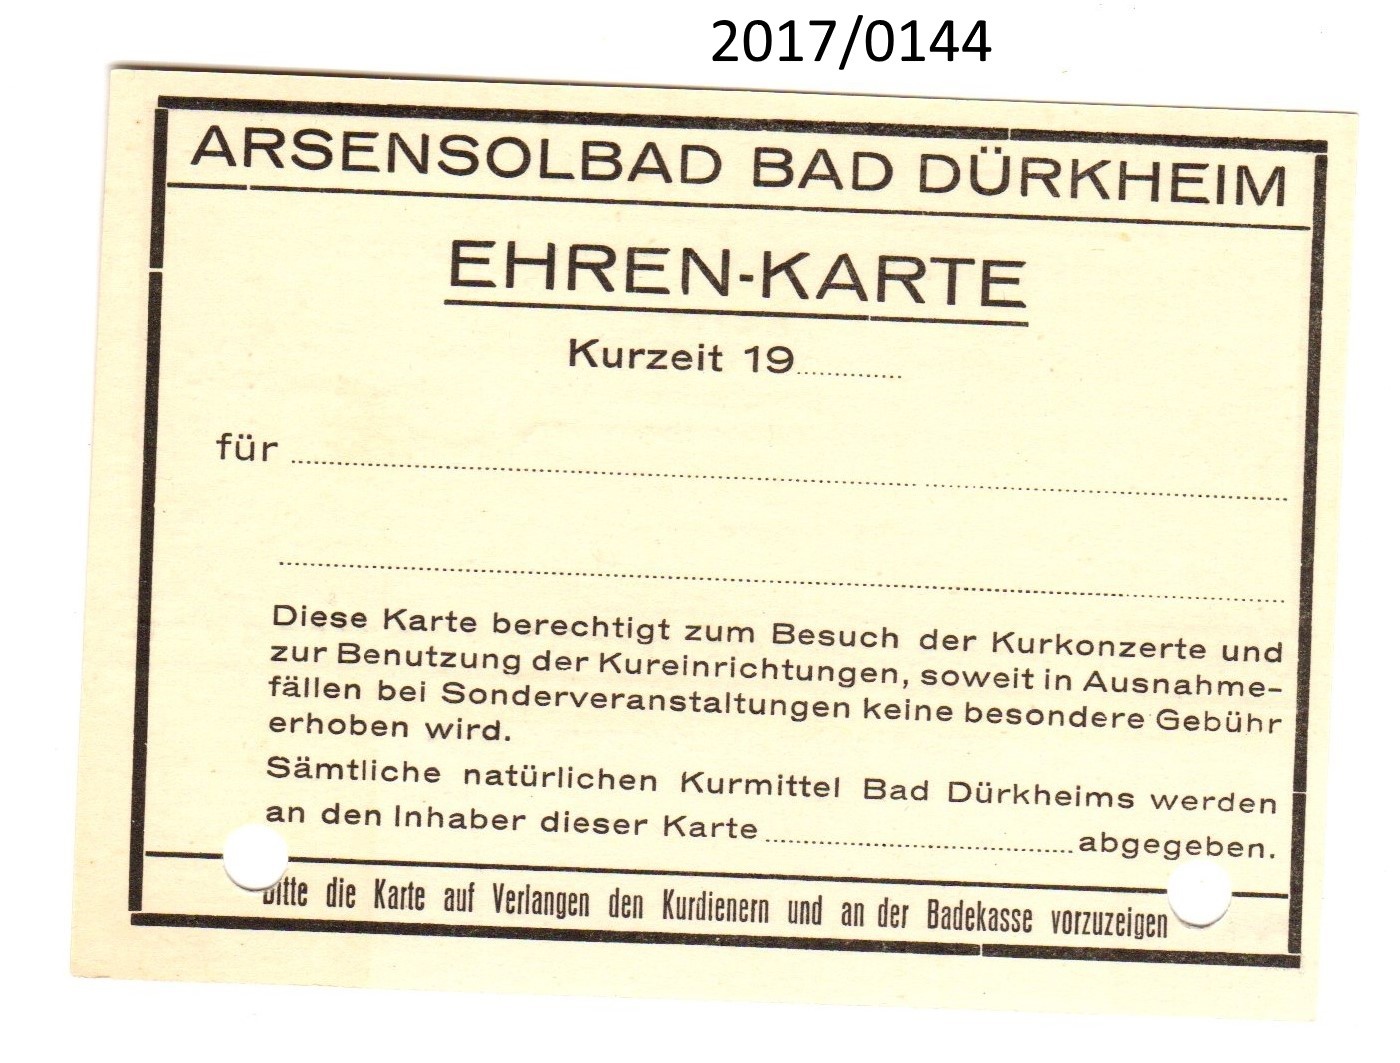 Ehrenkarte Arsensolbad Bad Dürkheim (Stadtmuseum Bad Dürkheim, Museumsgesellschaft Bad Dürkheim e.V. CC BY-NC-SA)